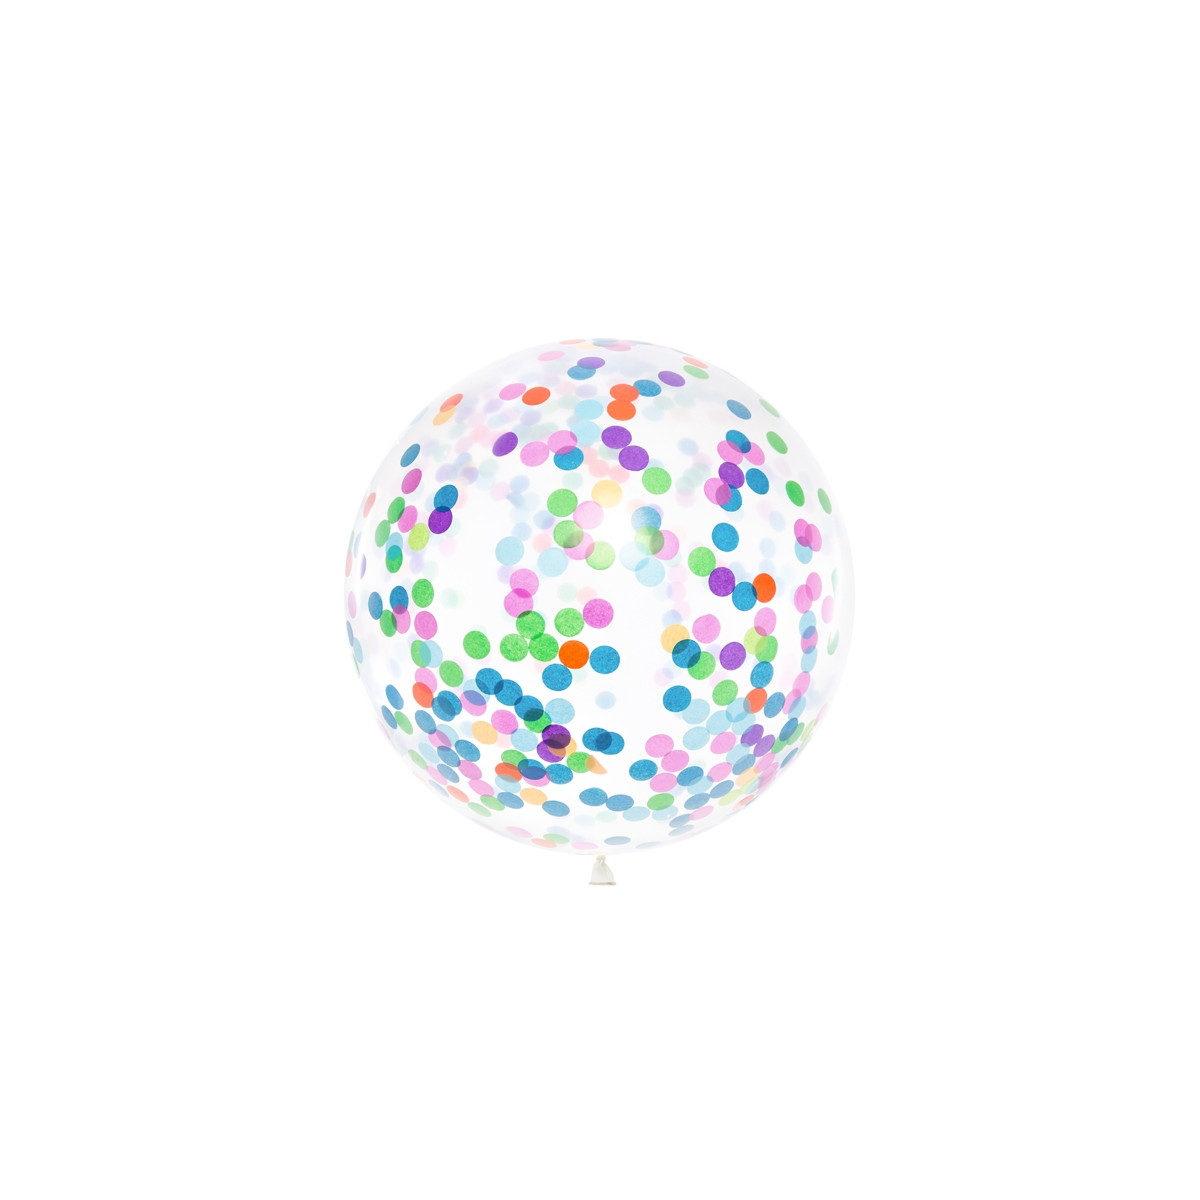 Ballon Confettis 1 mètre